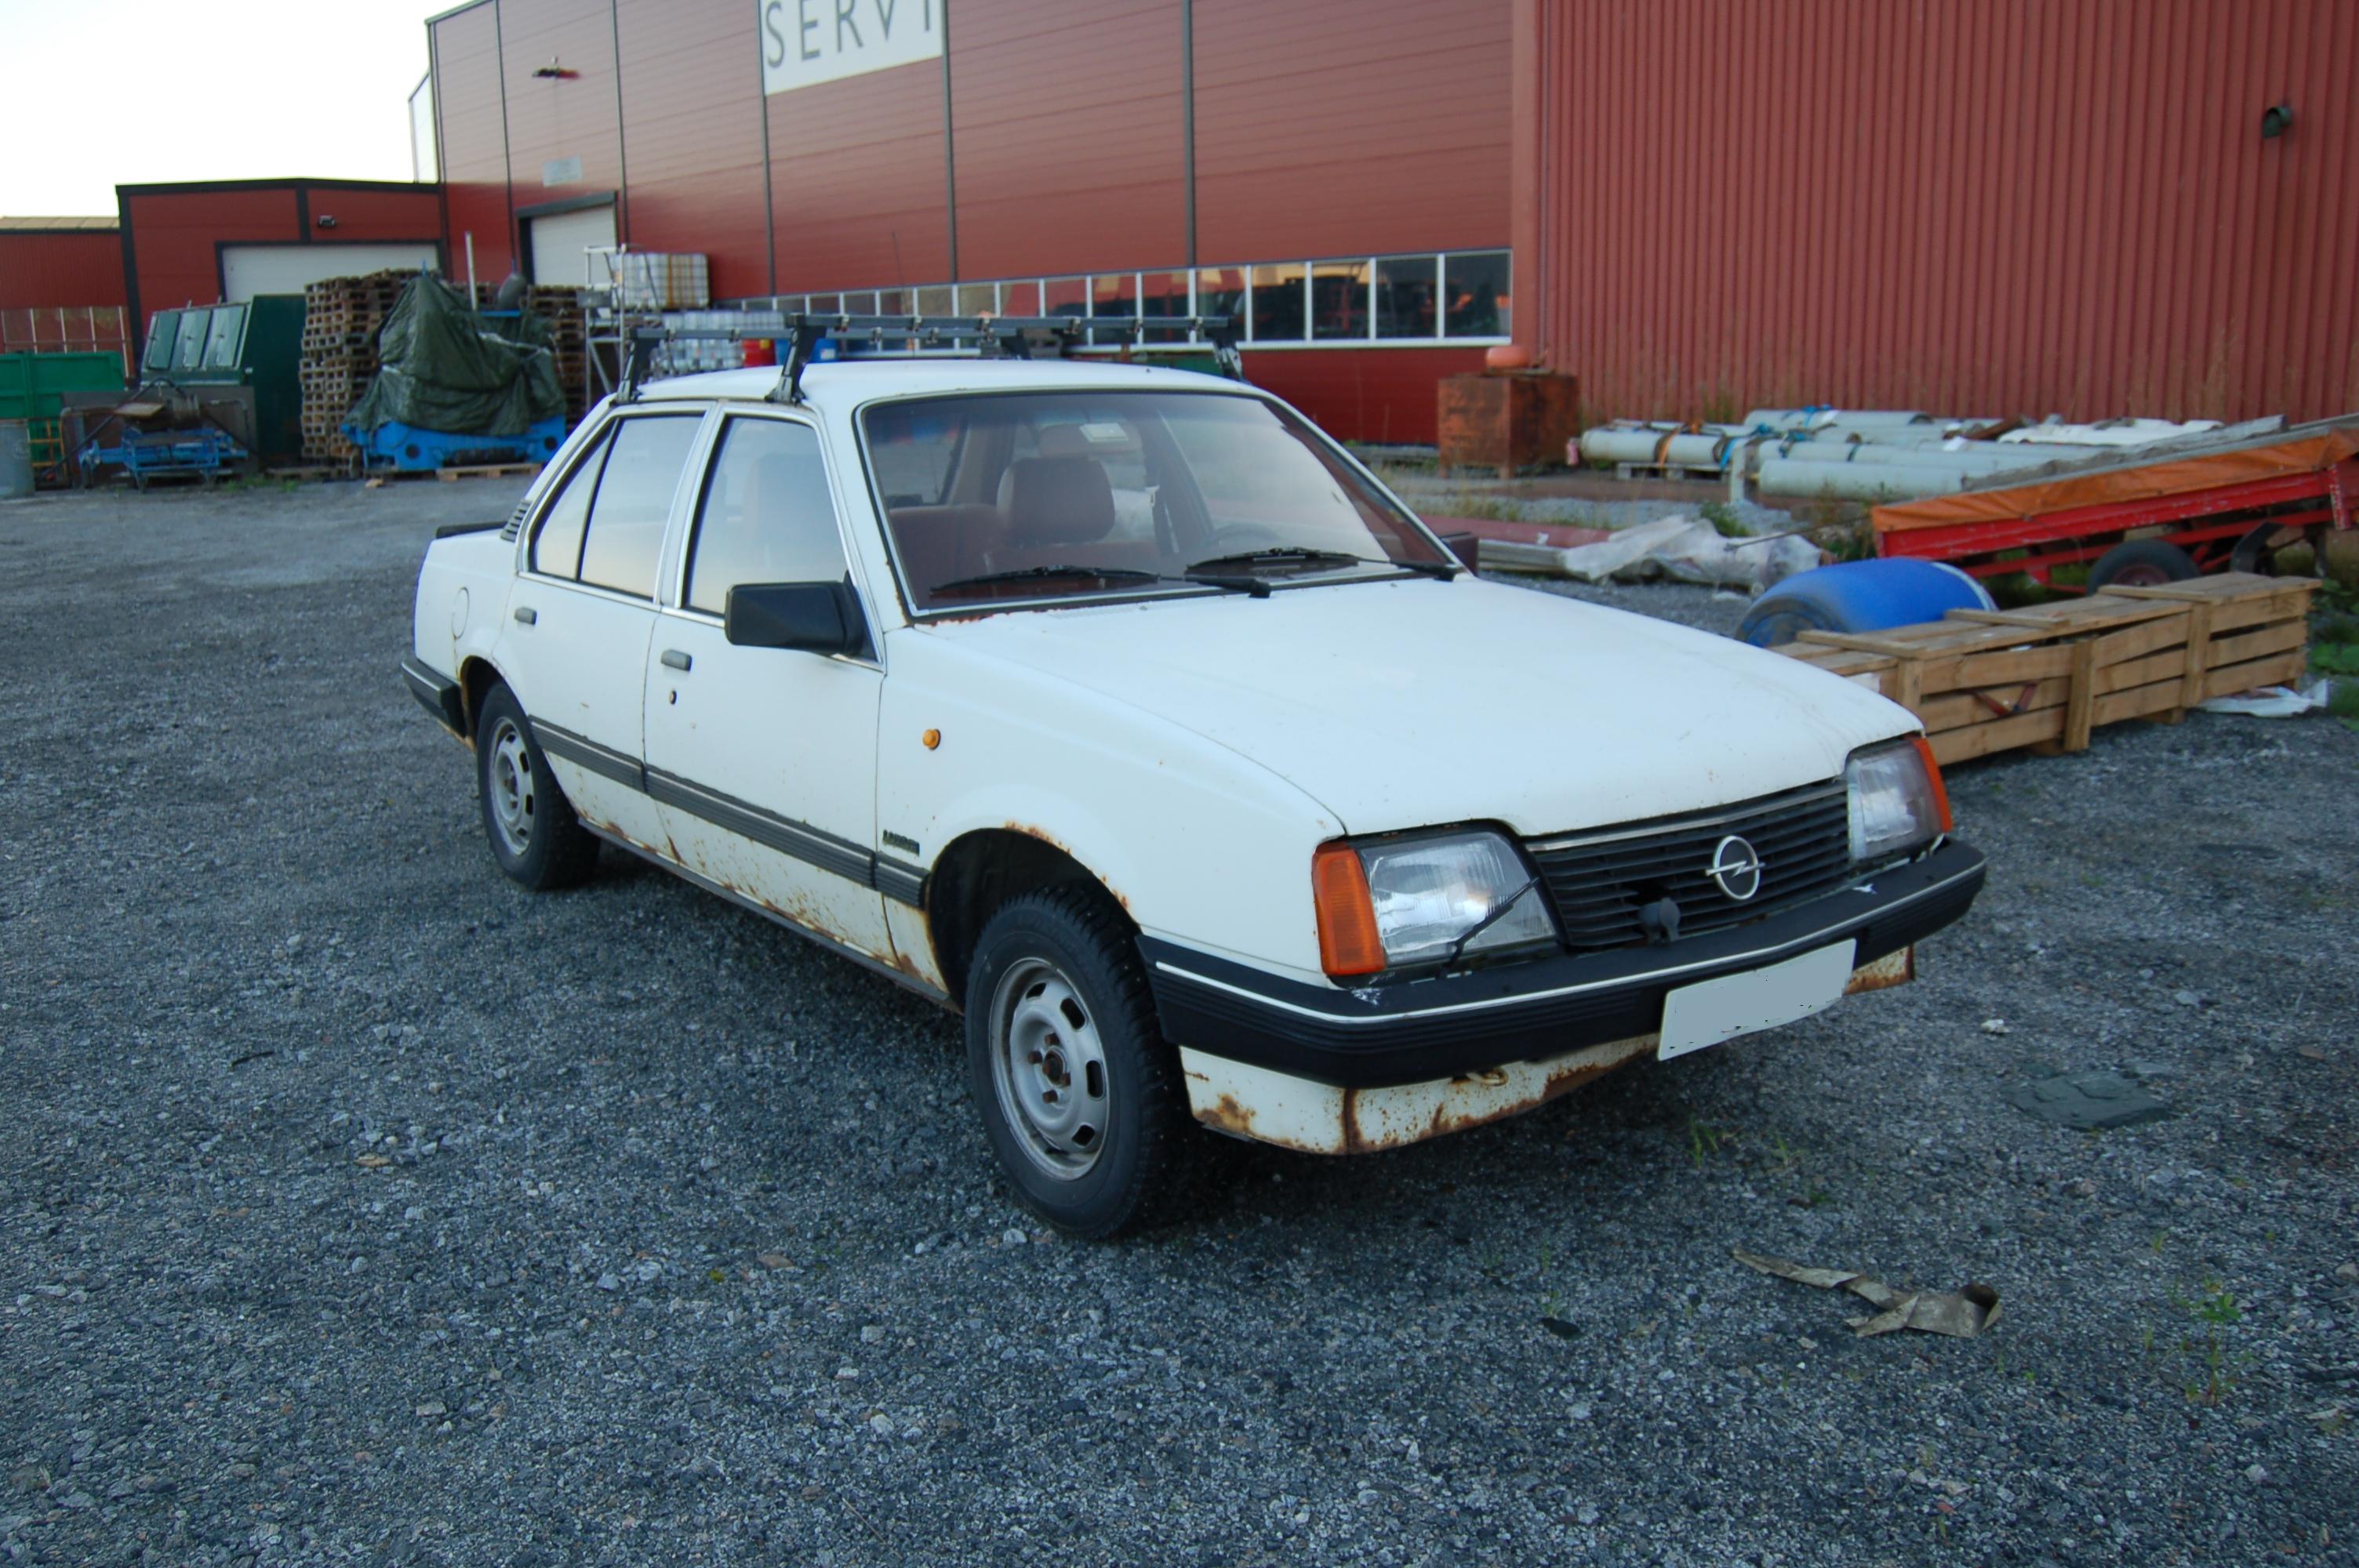 Opel Ascona 1.6